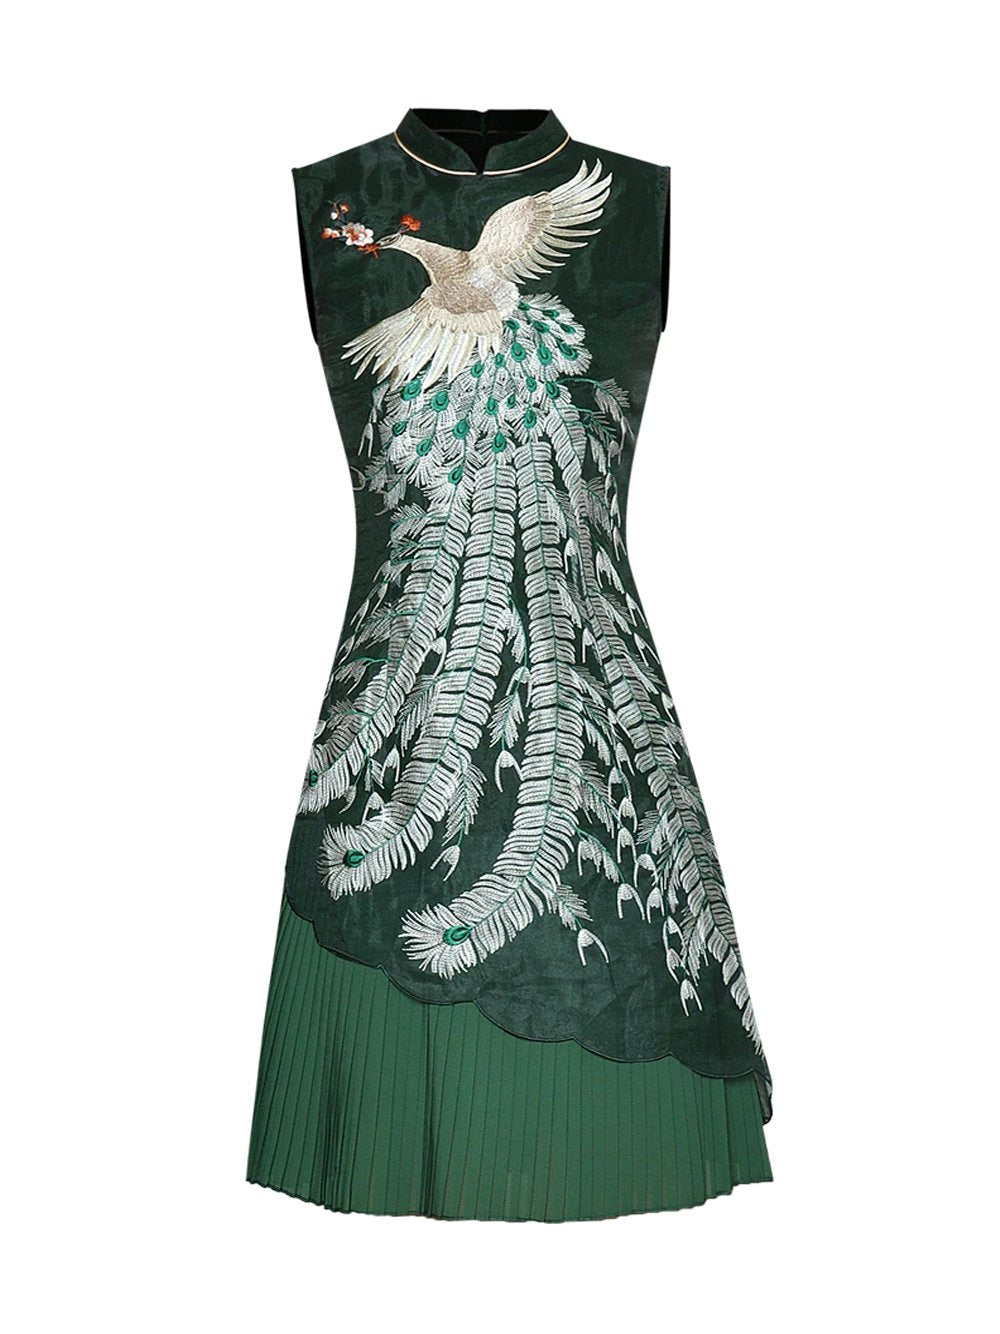 PEACELLE Embroidery Mini Dress